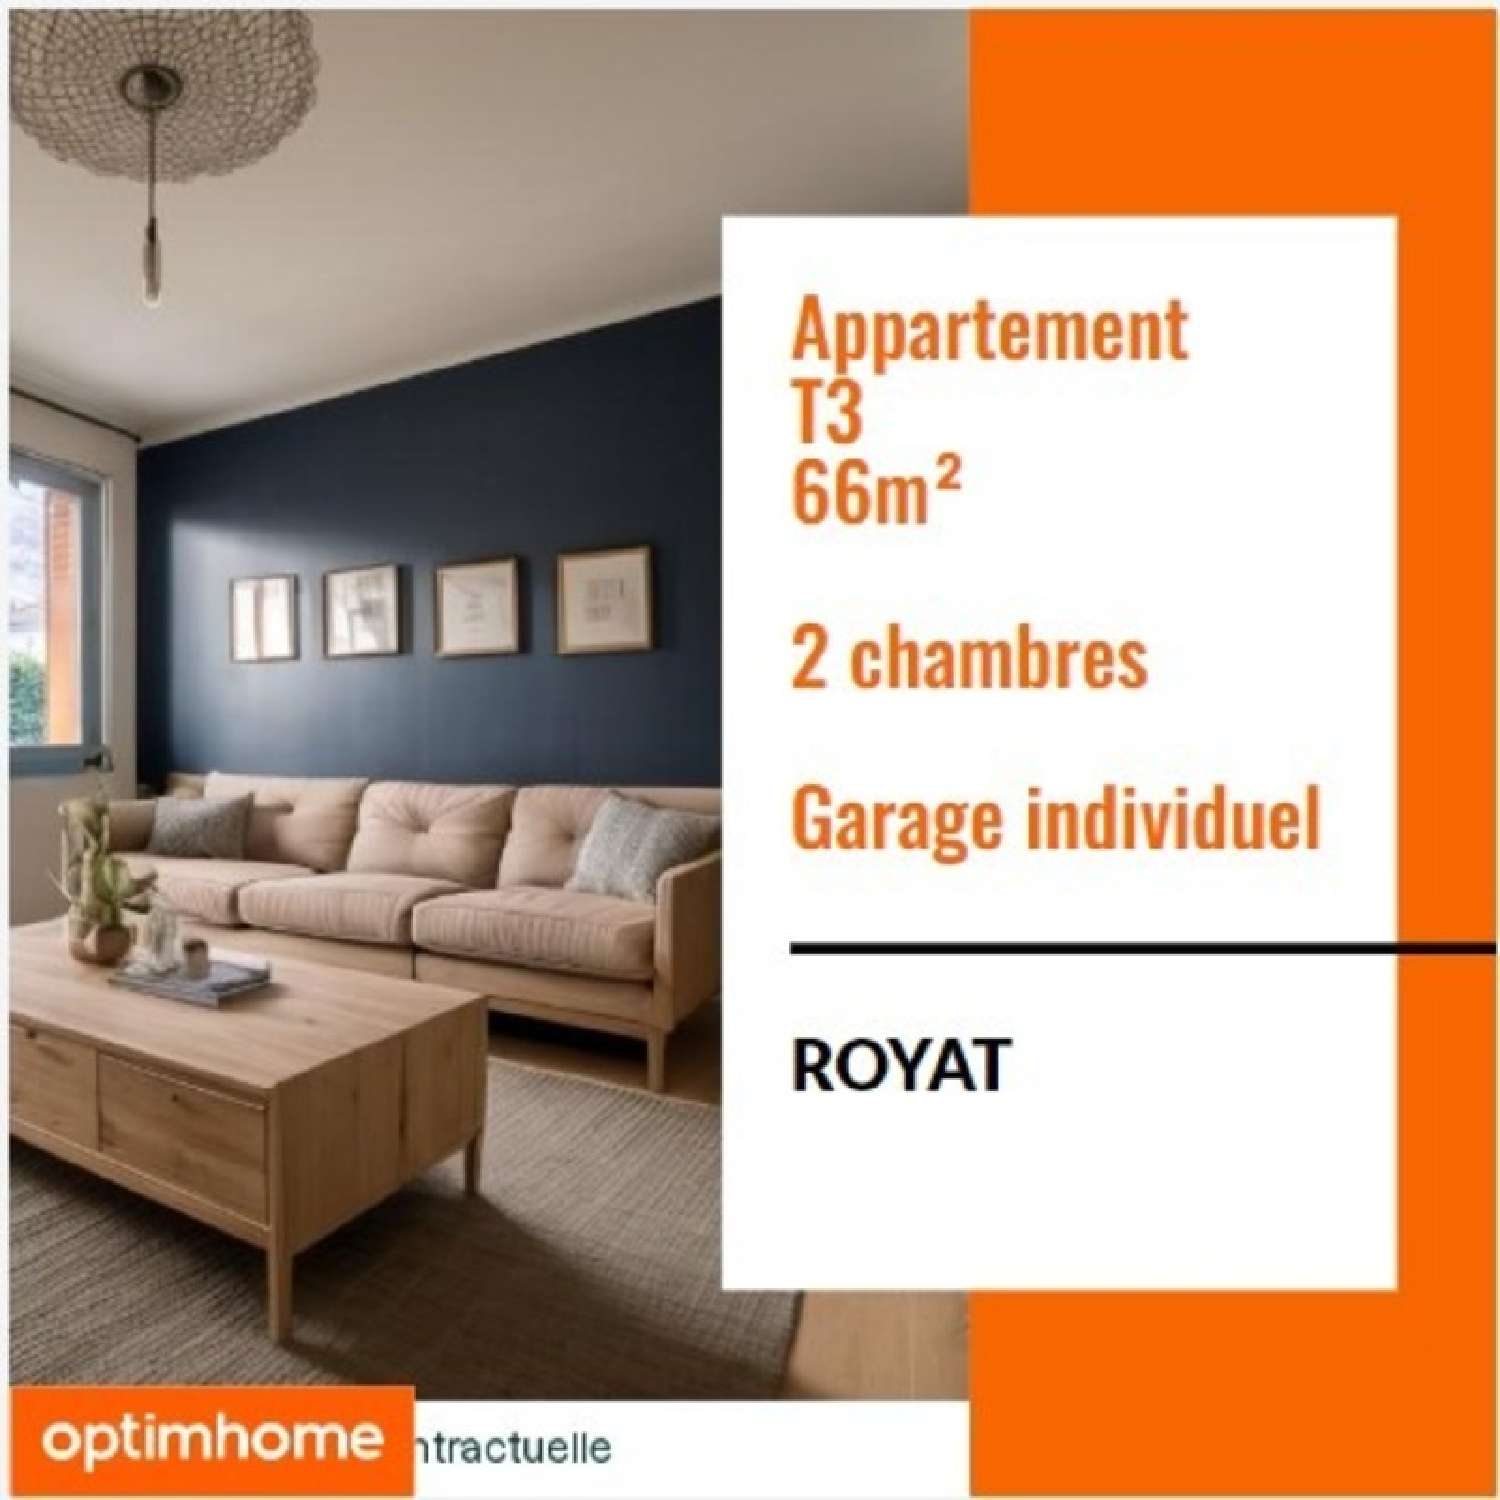  for sale apartment Royat Puy-de-Dôme 1